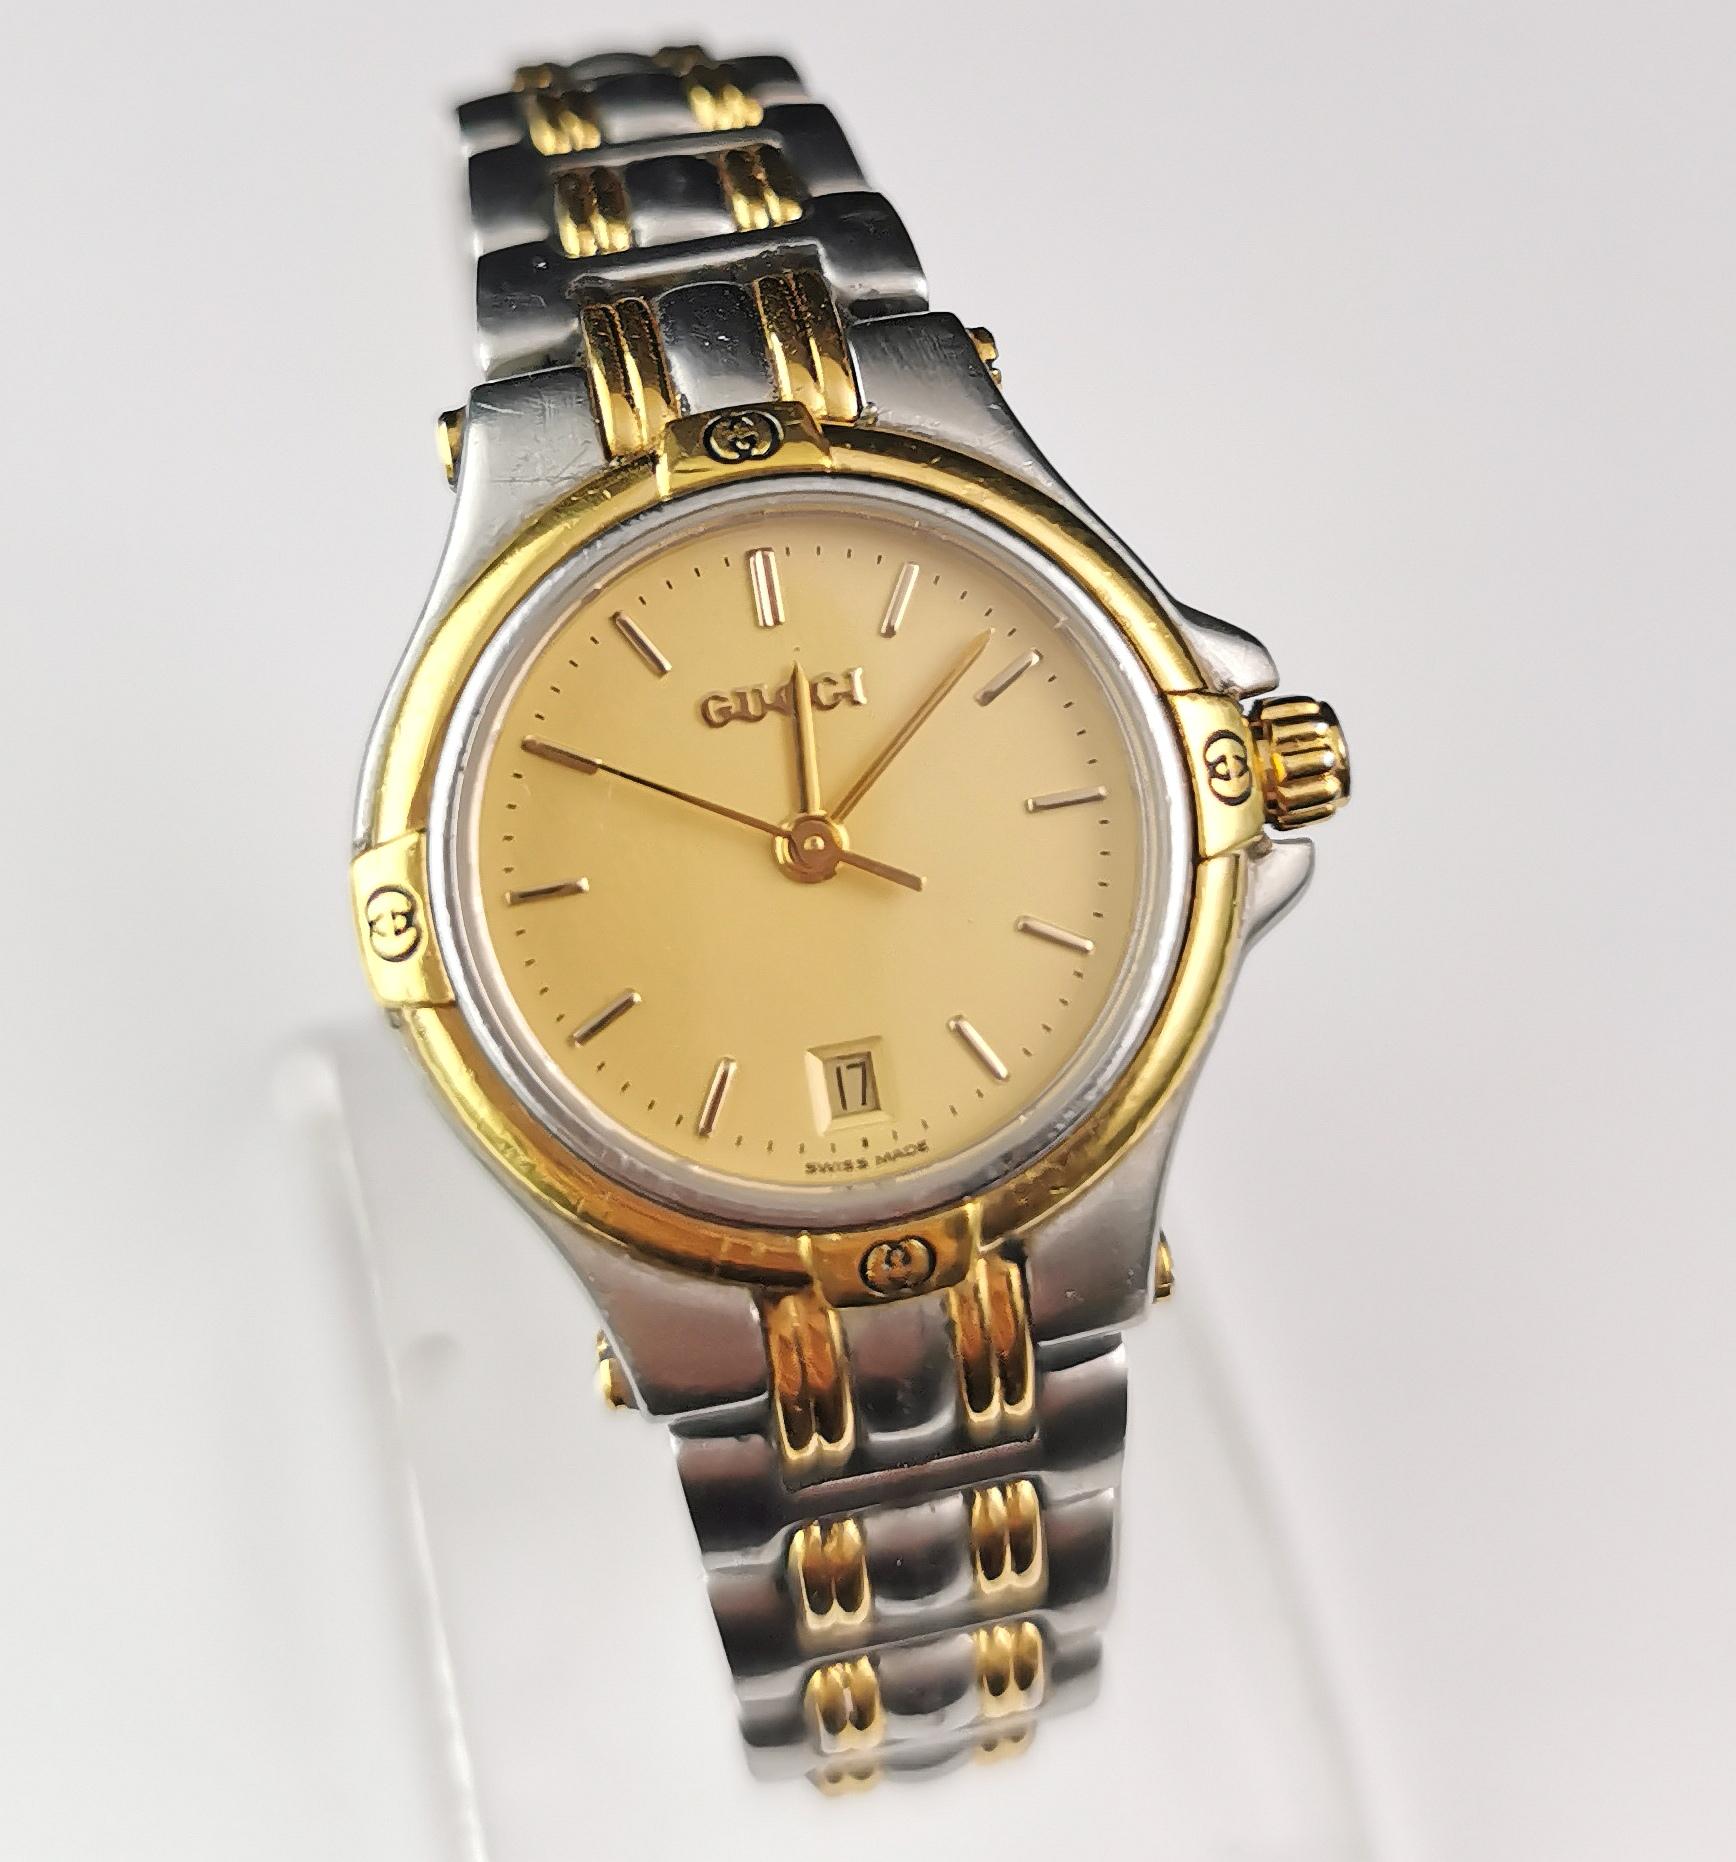 Une élégante montre-bracelet Gucci 9040l en acier inoxydable et plaqué or. 

Cette montre à bracelet au design épais est dotée d'un bracelet à maillons en acier inoxydable et en plaqué or 18ct. 

Le boîtier est en acier inoxydable avec des reflets